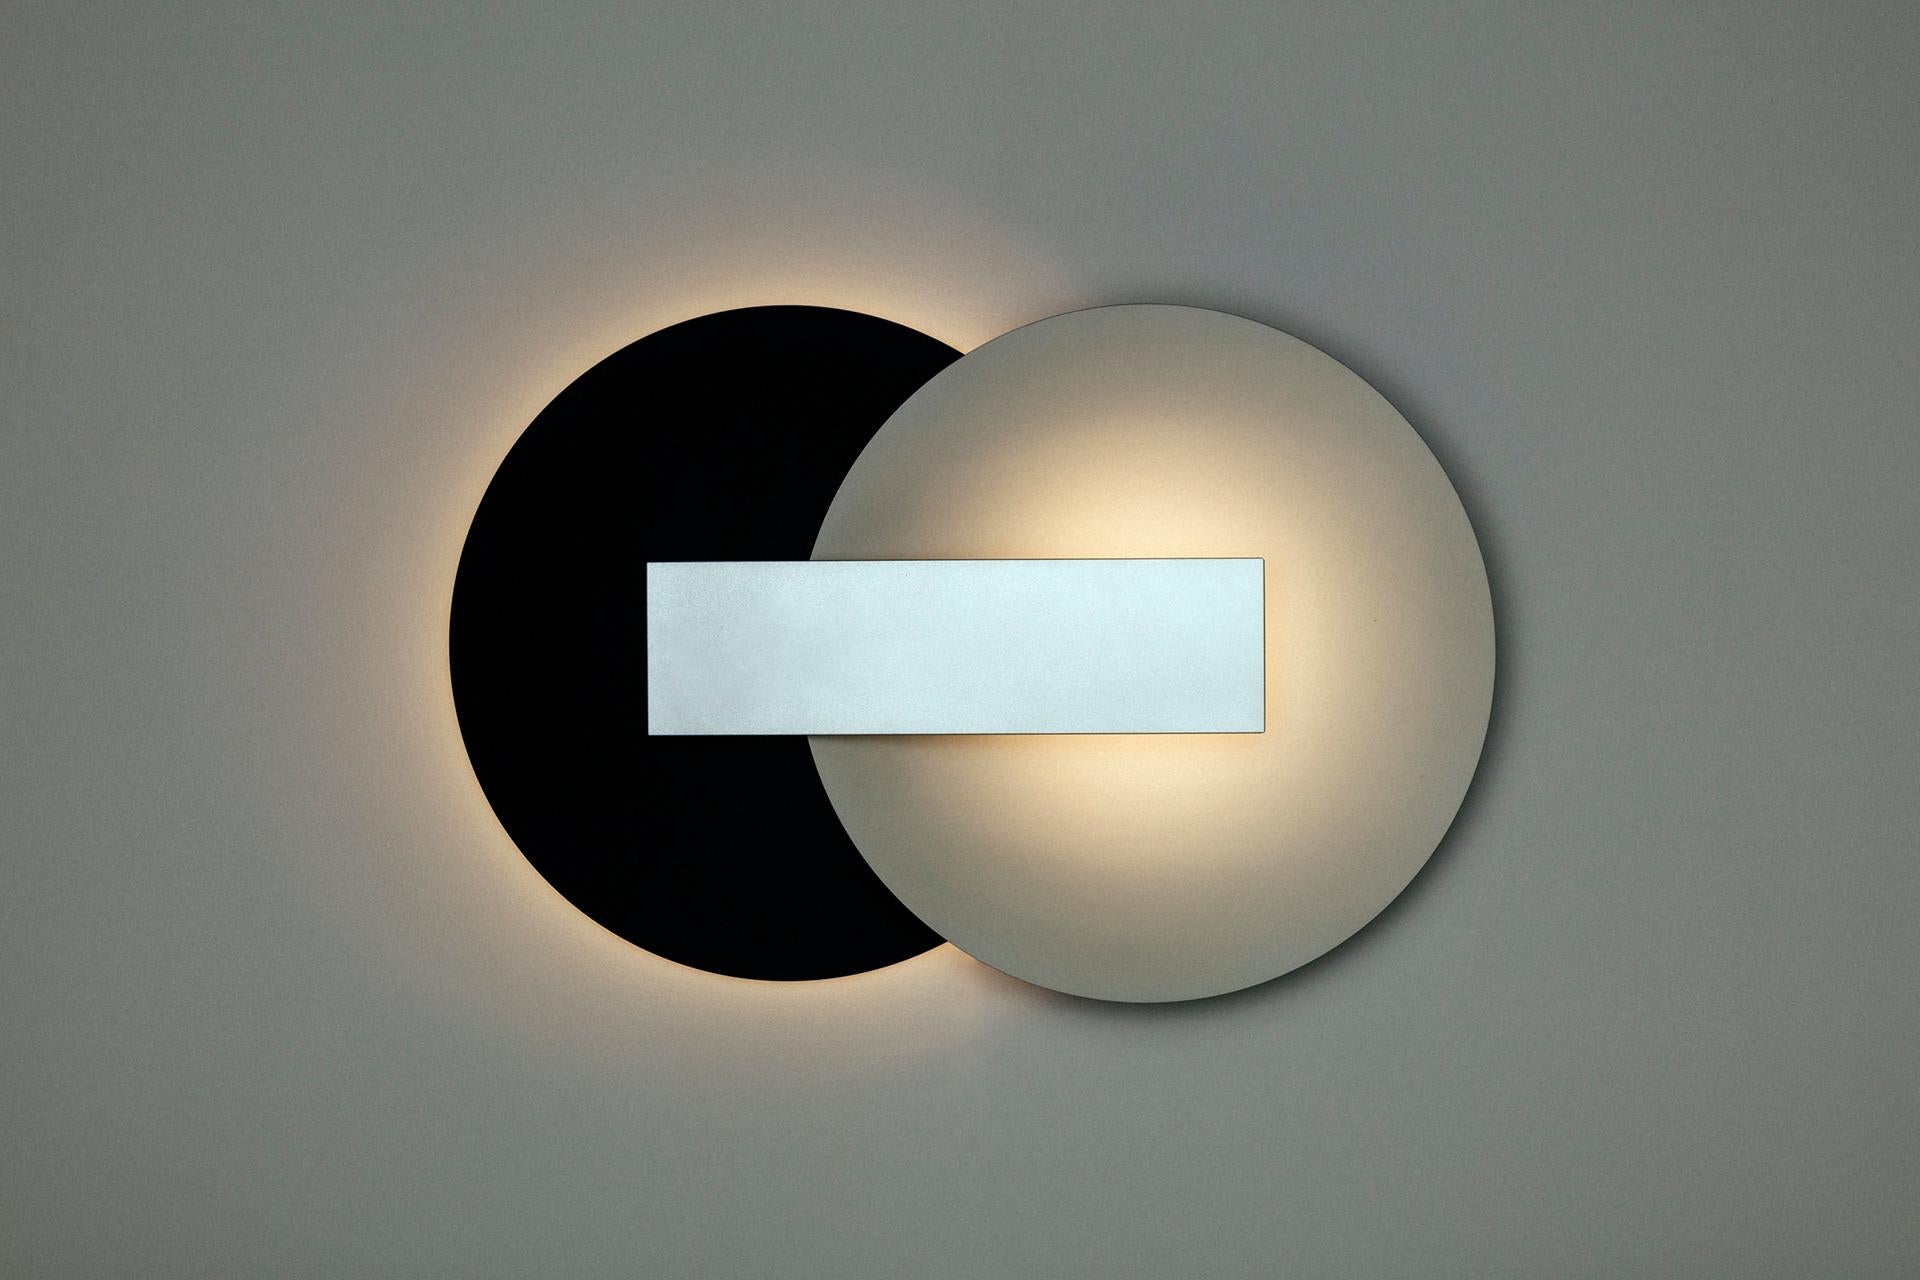 Orbe est une lampe murale à lumière indirecte, conçue pour fournir un éclairage doux à l'environnement.
?
La pièce a une structure simple, composée du minimum requis pour sa fonctionnalité : la boîte frontale abrite la source lumineuse et fournit